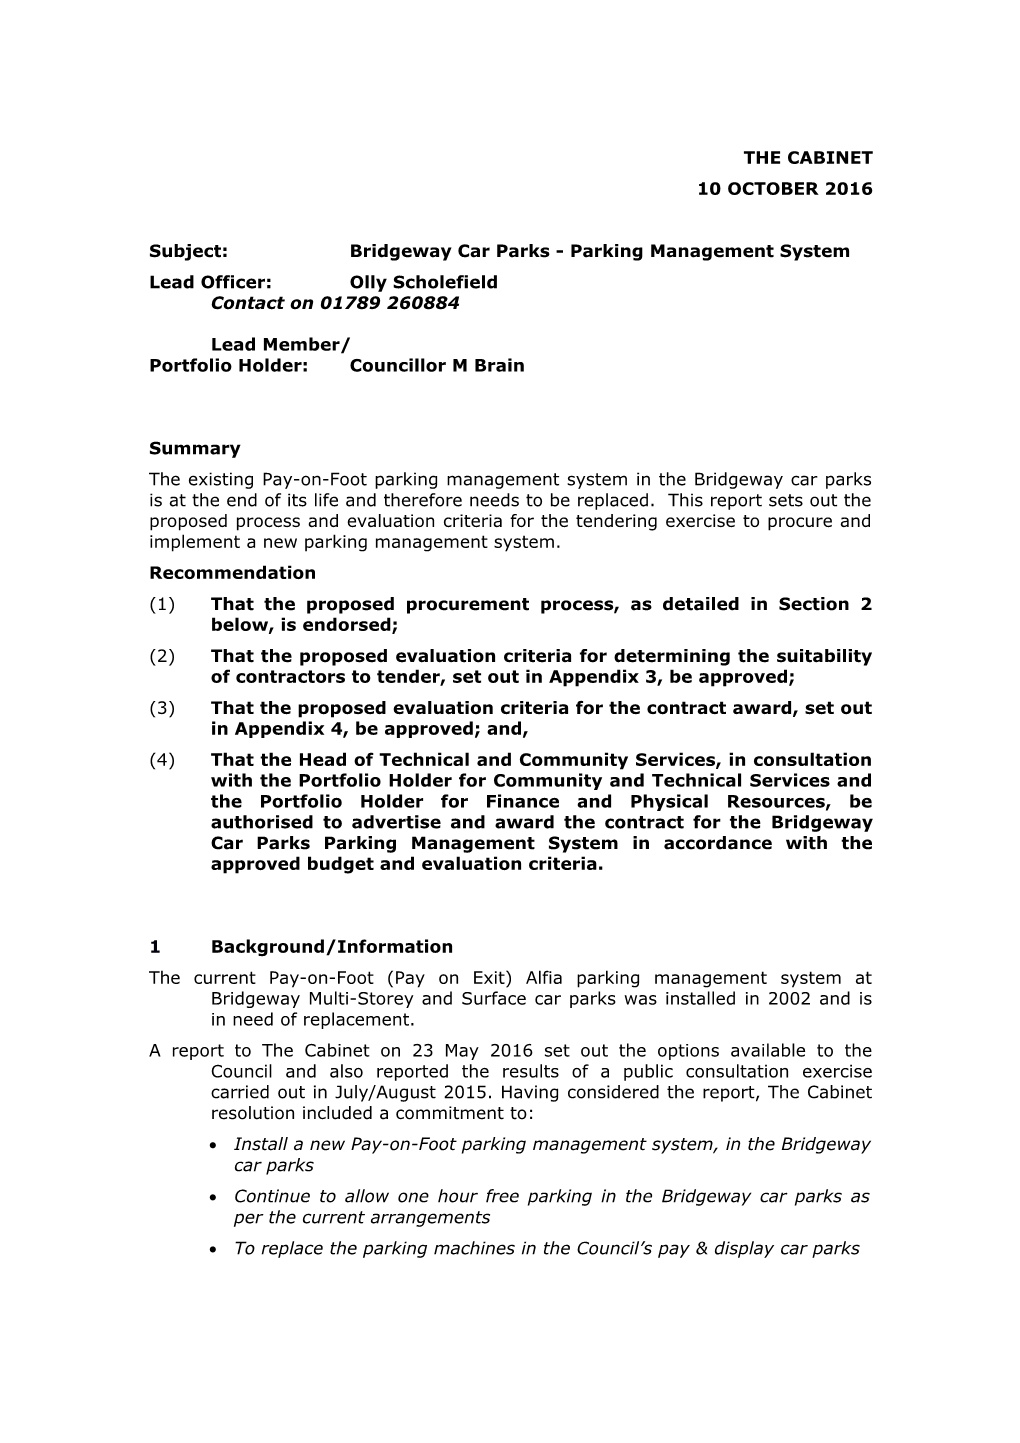 Subject:Bridgeway Car Parks - Parking Management System